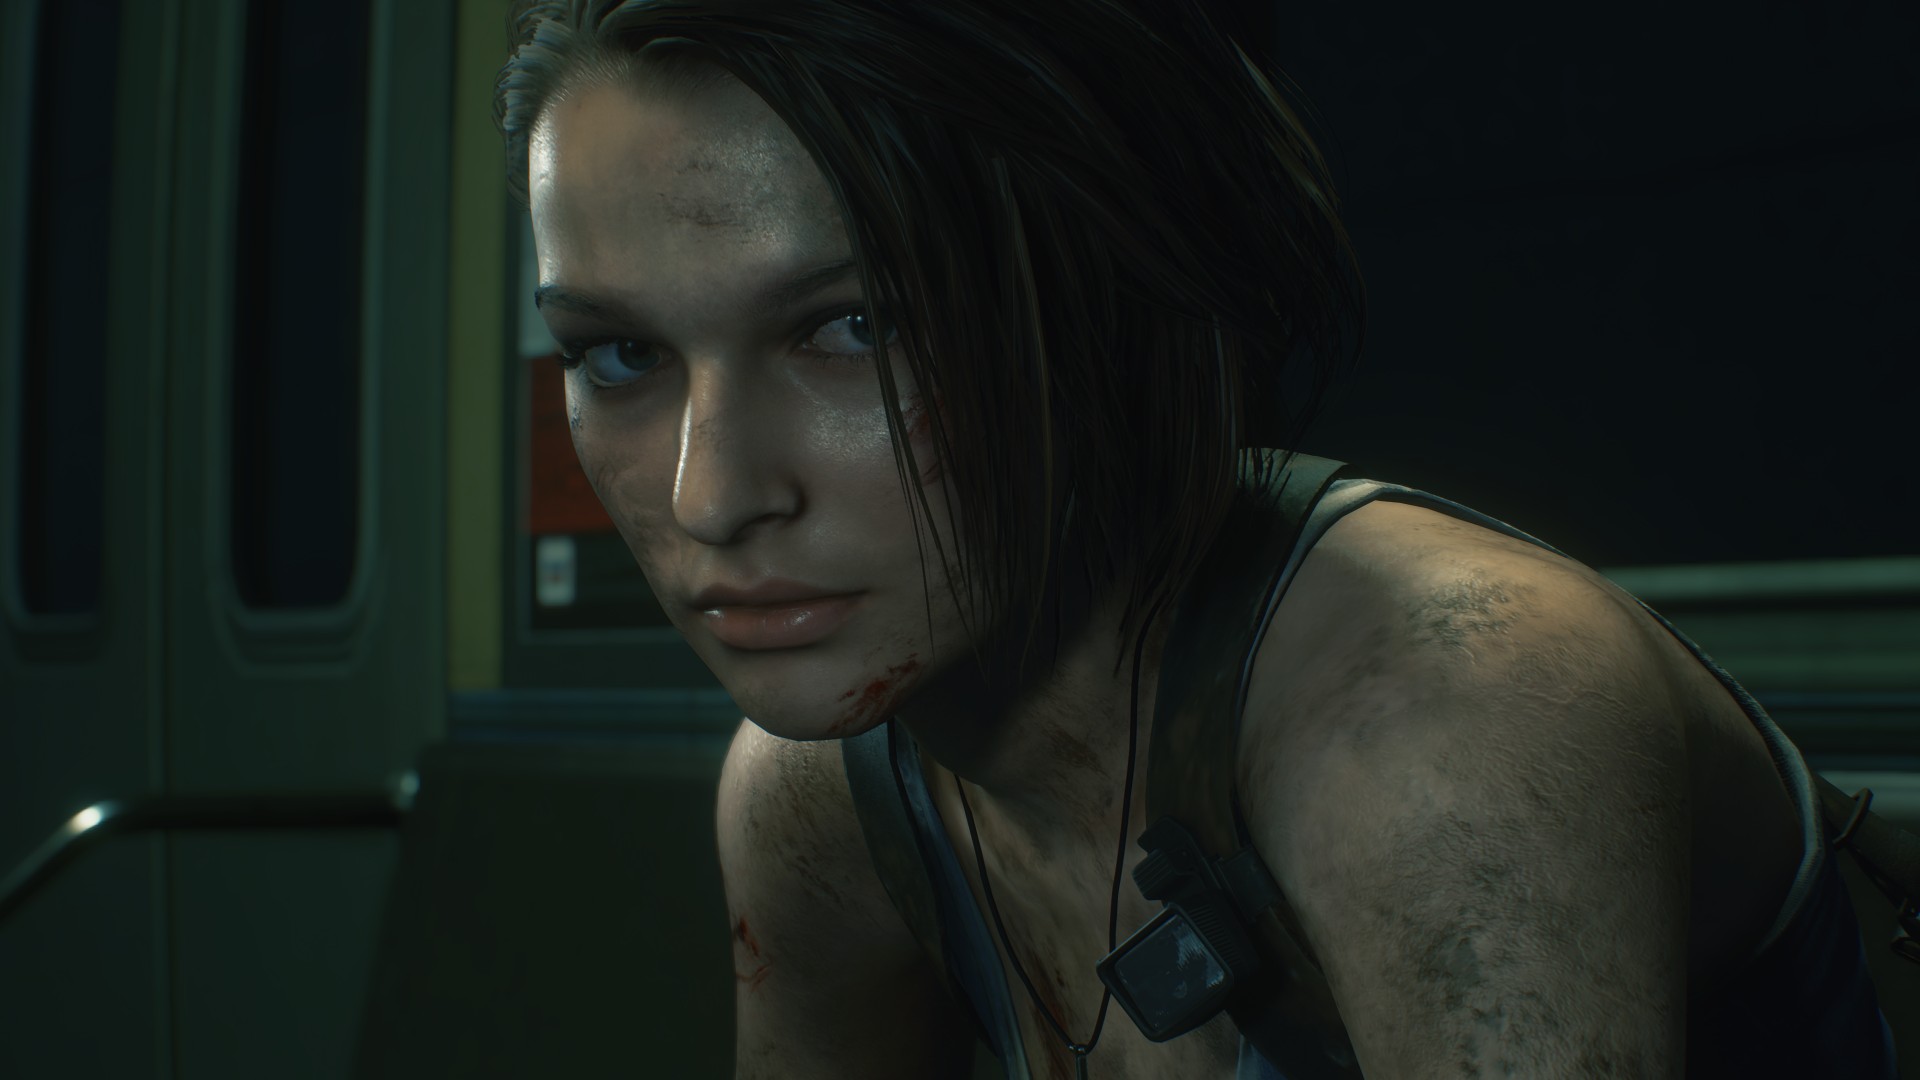  Resident Evil 3 apportera des changements majeurs à l’histoire originale et sera orienté action